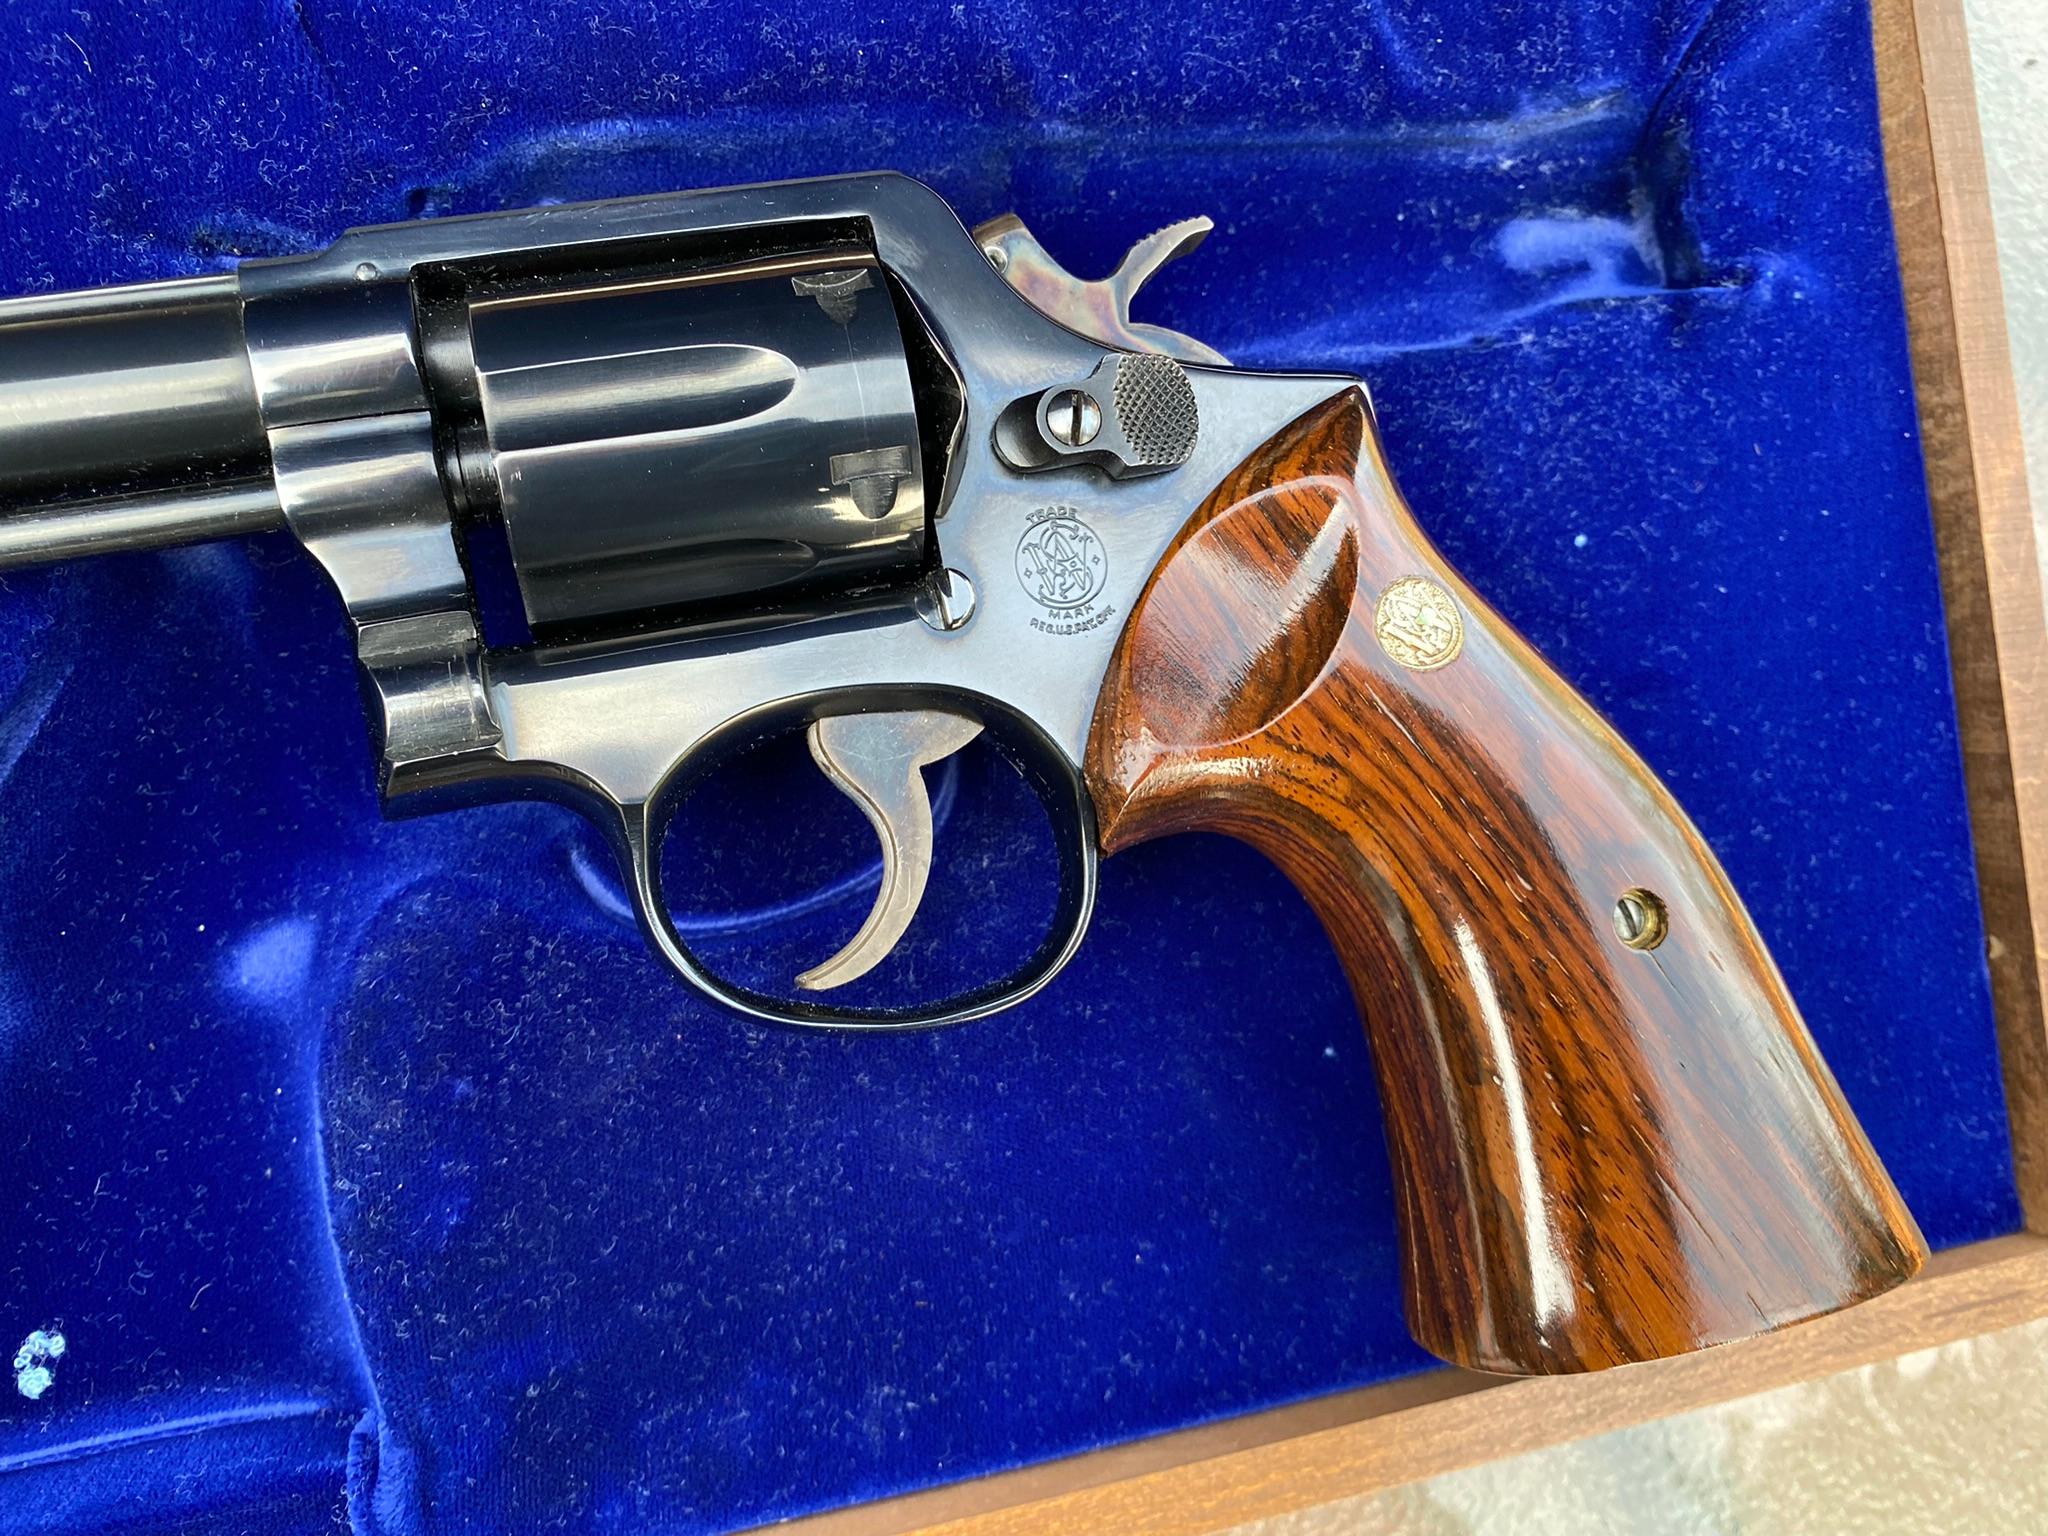 38 Smith & Wesson 40th Anniversary Ohio State Patrol Revolver in Presentation Case